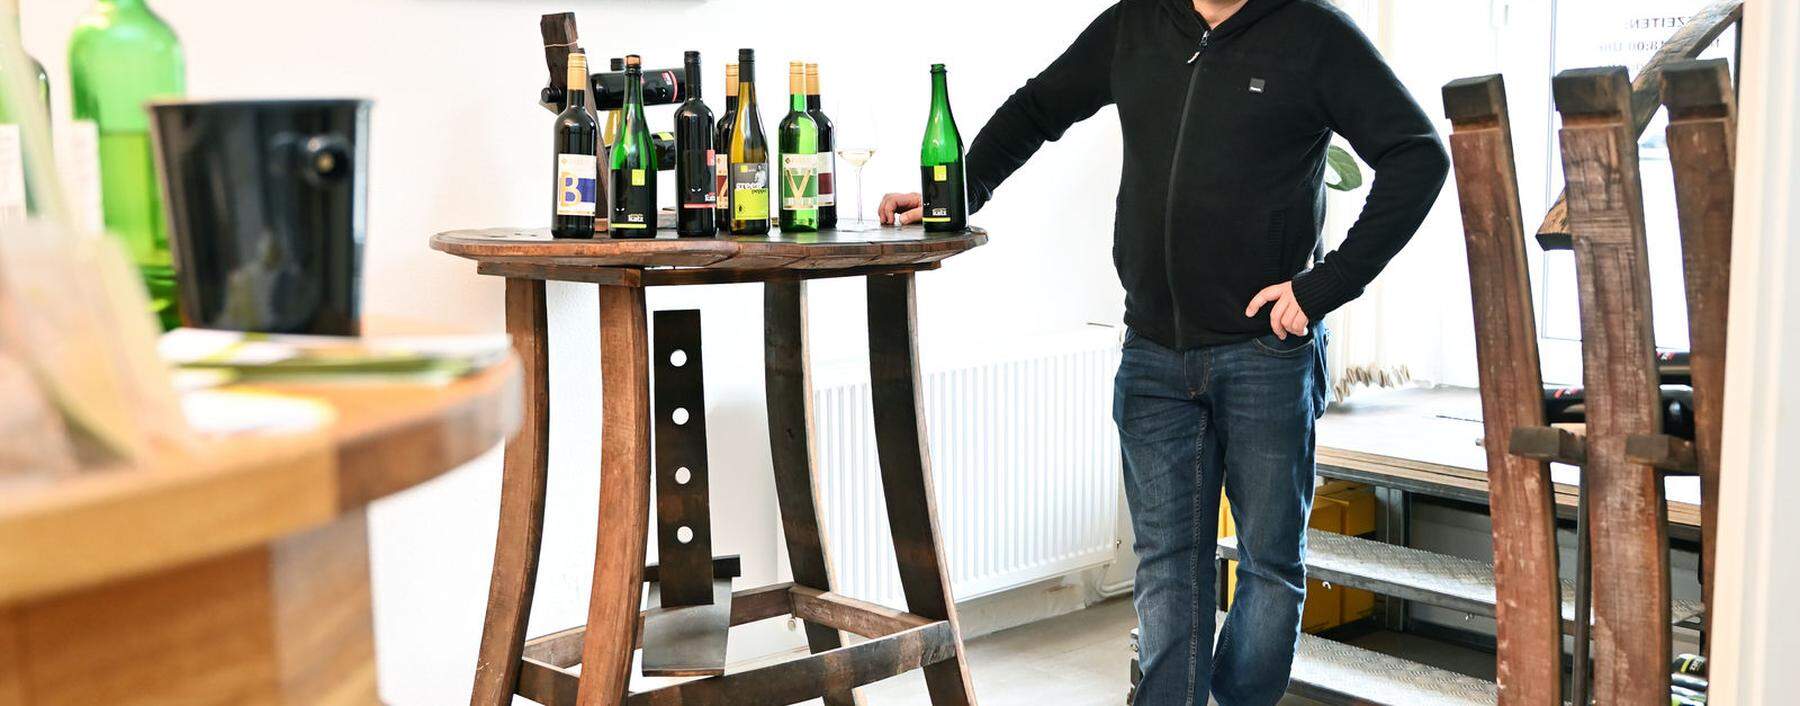 Roman Proschinger (Vinumis, Freiwein) in seiner alkoholfreien Vinothek am Rennweg in Wien: „In spätestens zehn Jahren hat jeder Wirt einen alkoholfreien Wein oder Sekt.“